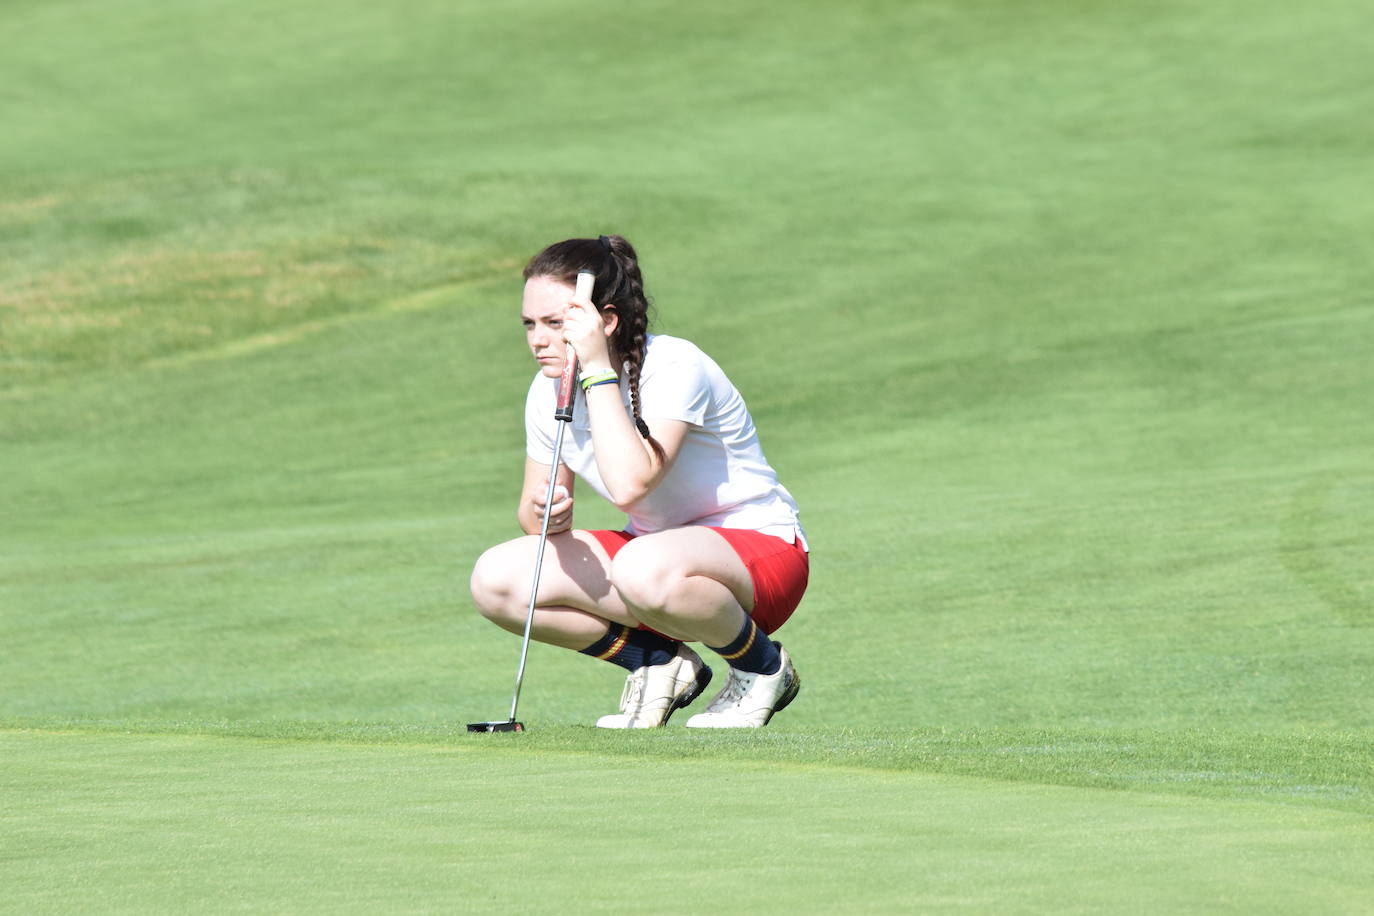 Los participantes en el torneo Bodegas Ontañón de la Liga de Golf y Vino disfrutaron de un gran día de golf en El Campo de Logroño.